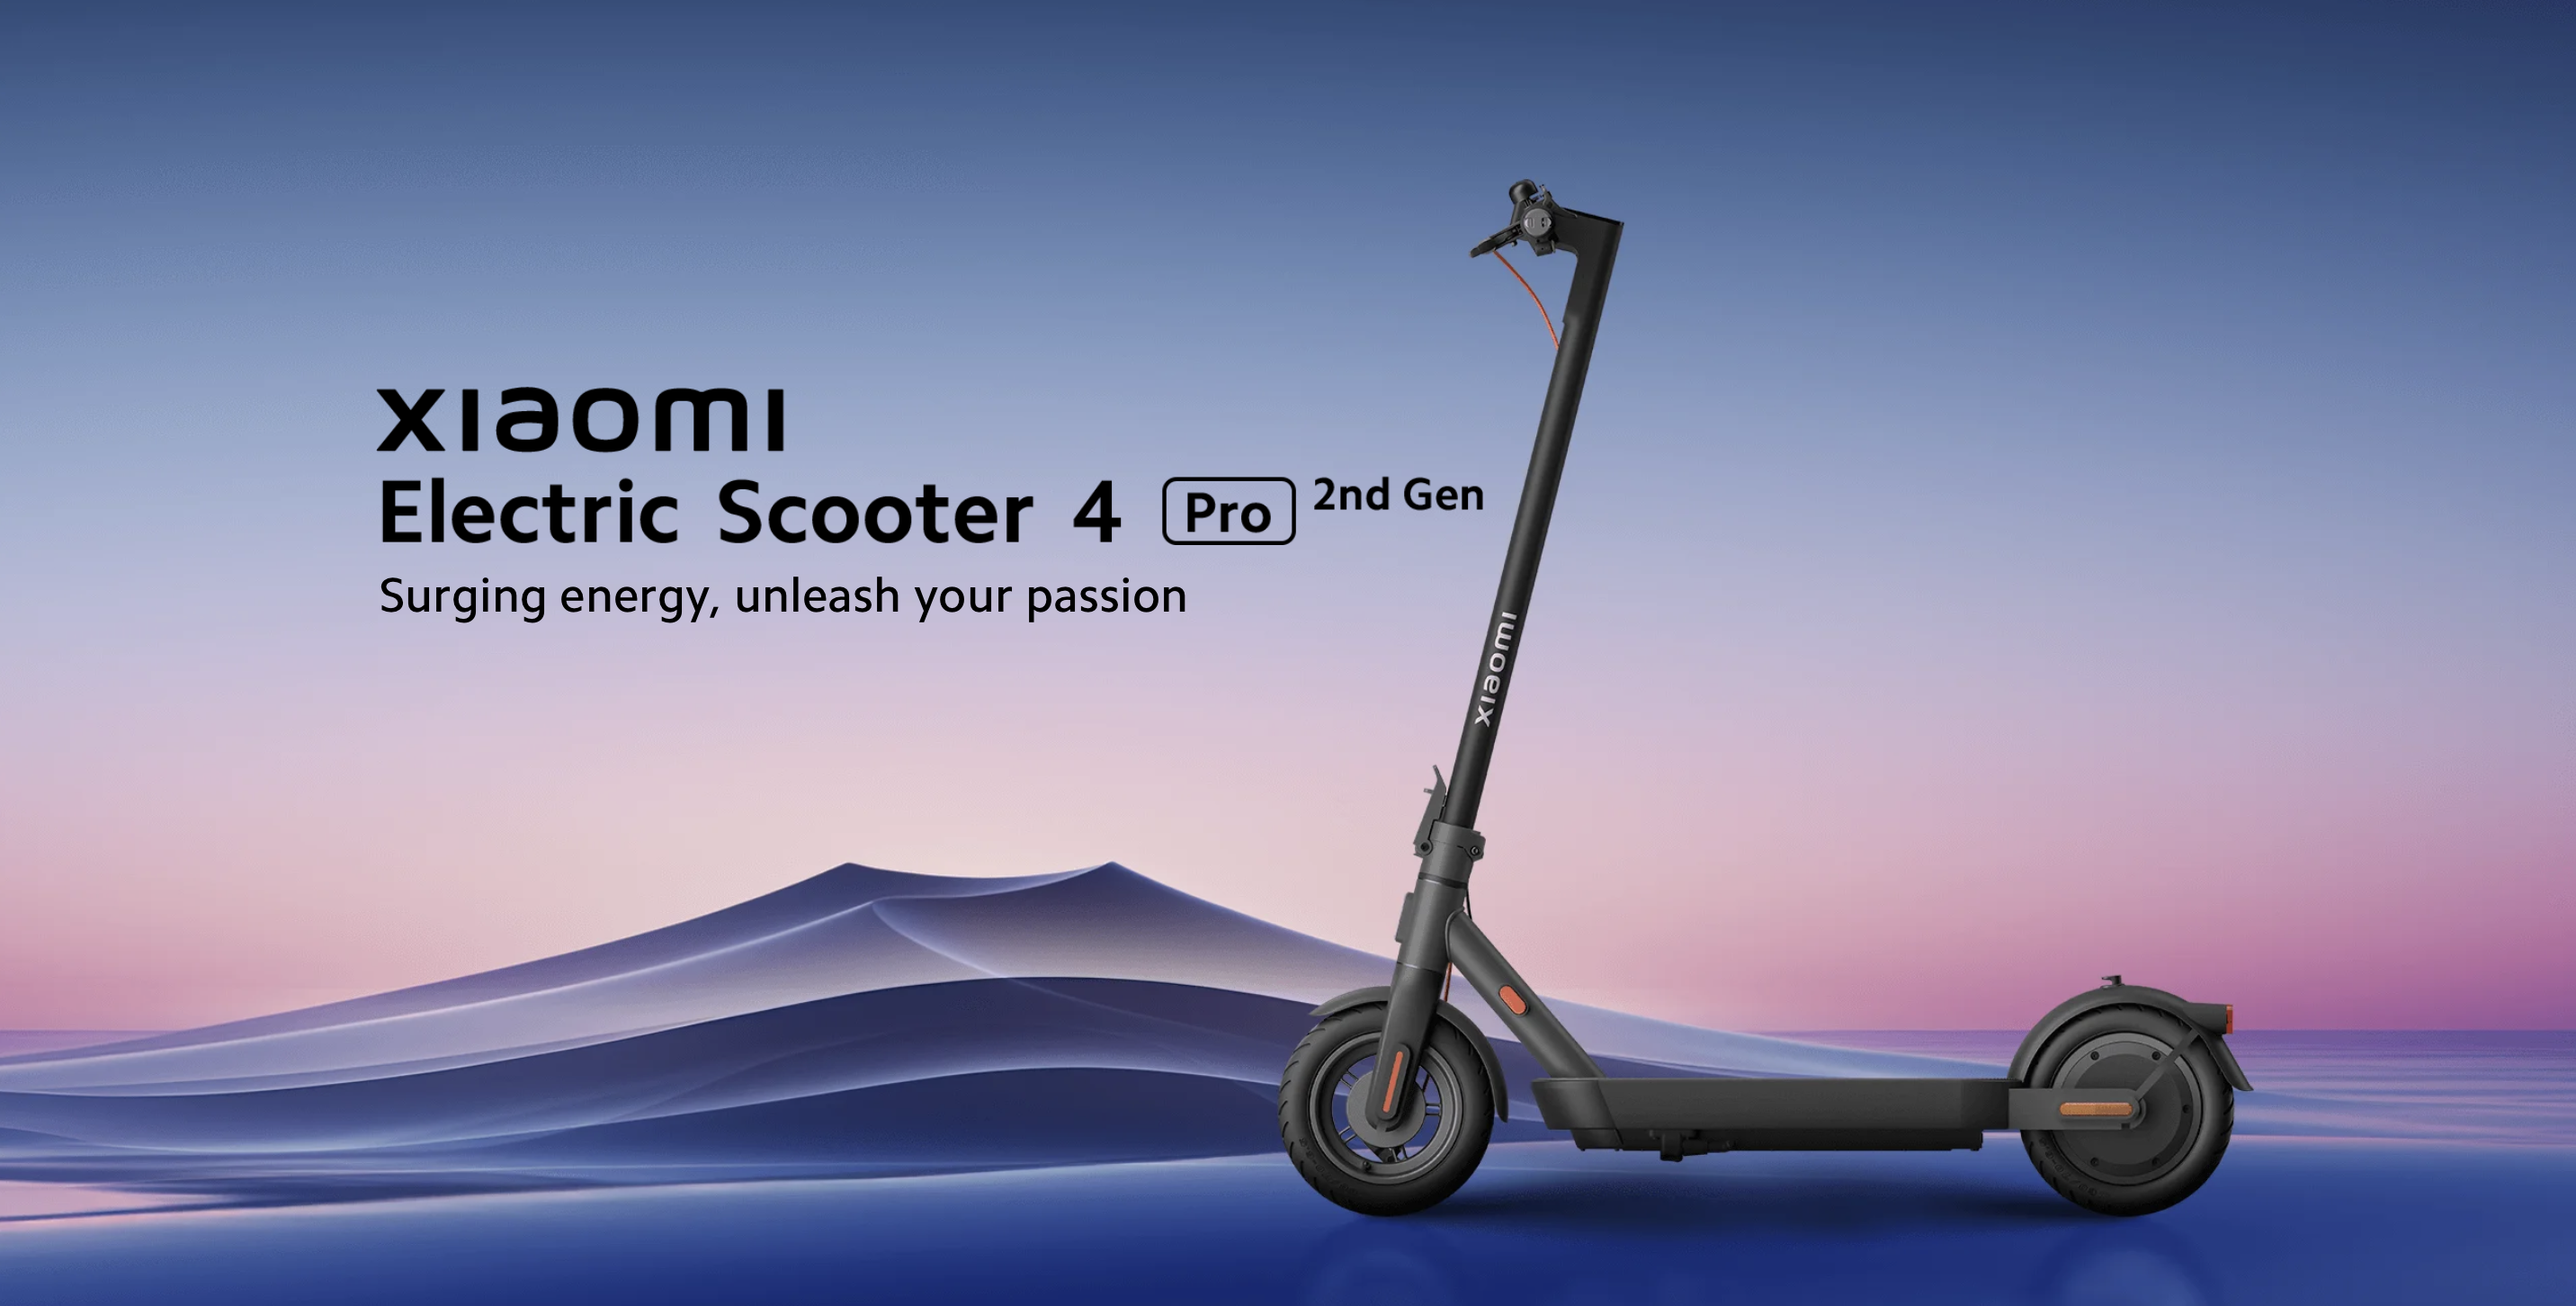 Le scooter électrique Xiaomi 4 Pro (2e génération), doté d'une autonomie de 60 km et d'une vitesse de pointe de 25 km/h, a fait ses débuts sur le marché mondial.